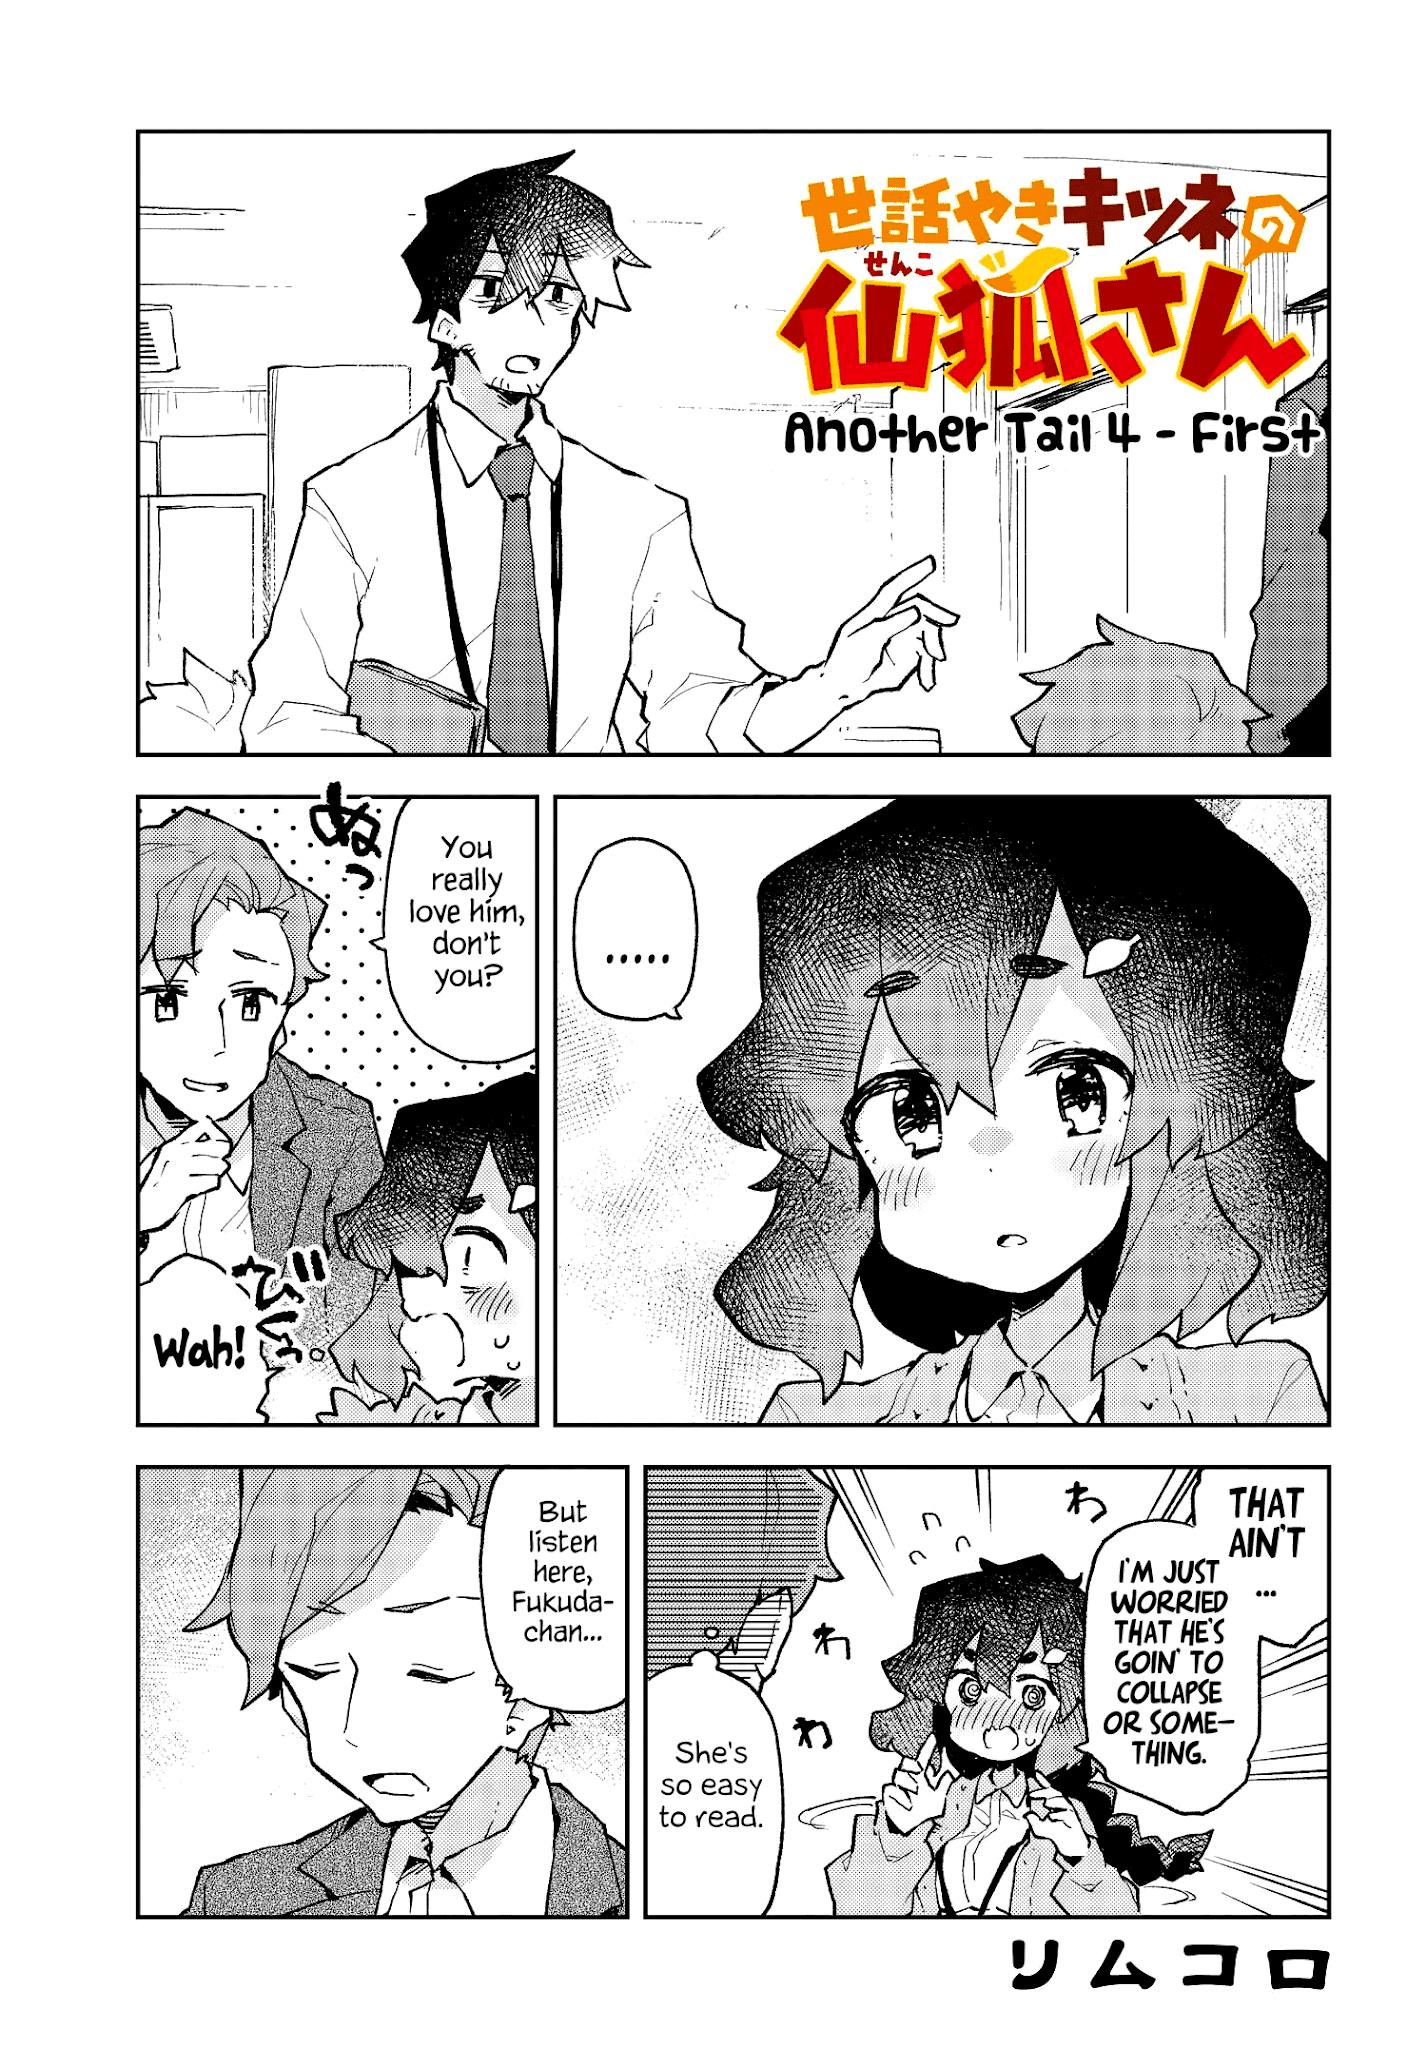 Sewayaki Kitsune No Senko-San Chapter 53.5: Another Tail 4 page 1 - Mangakakalot